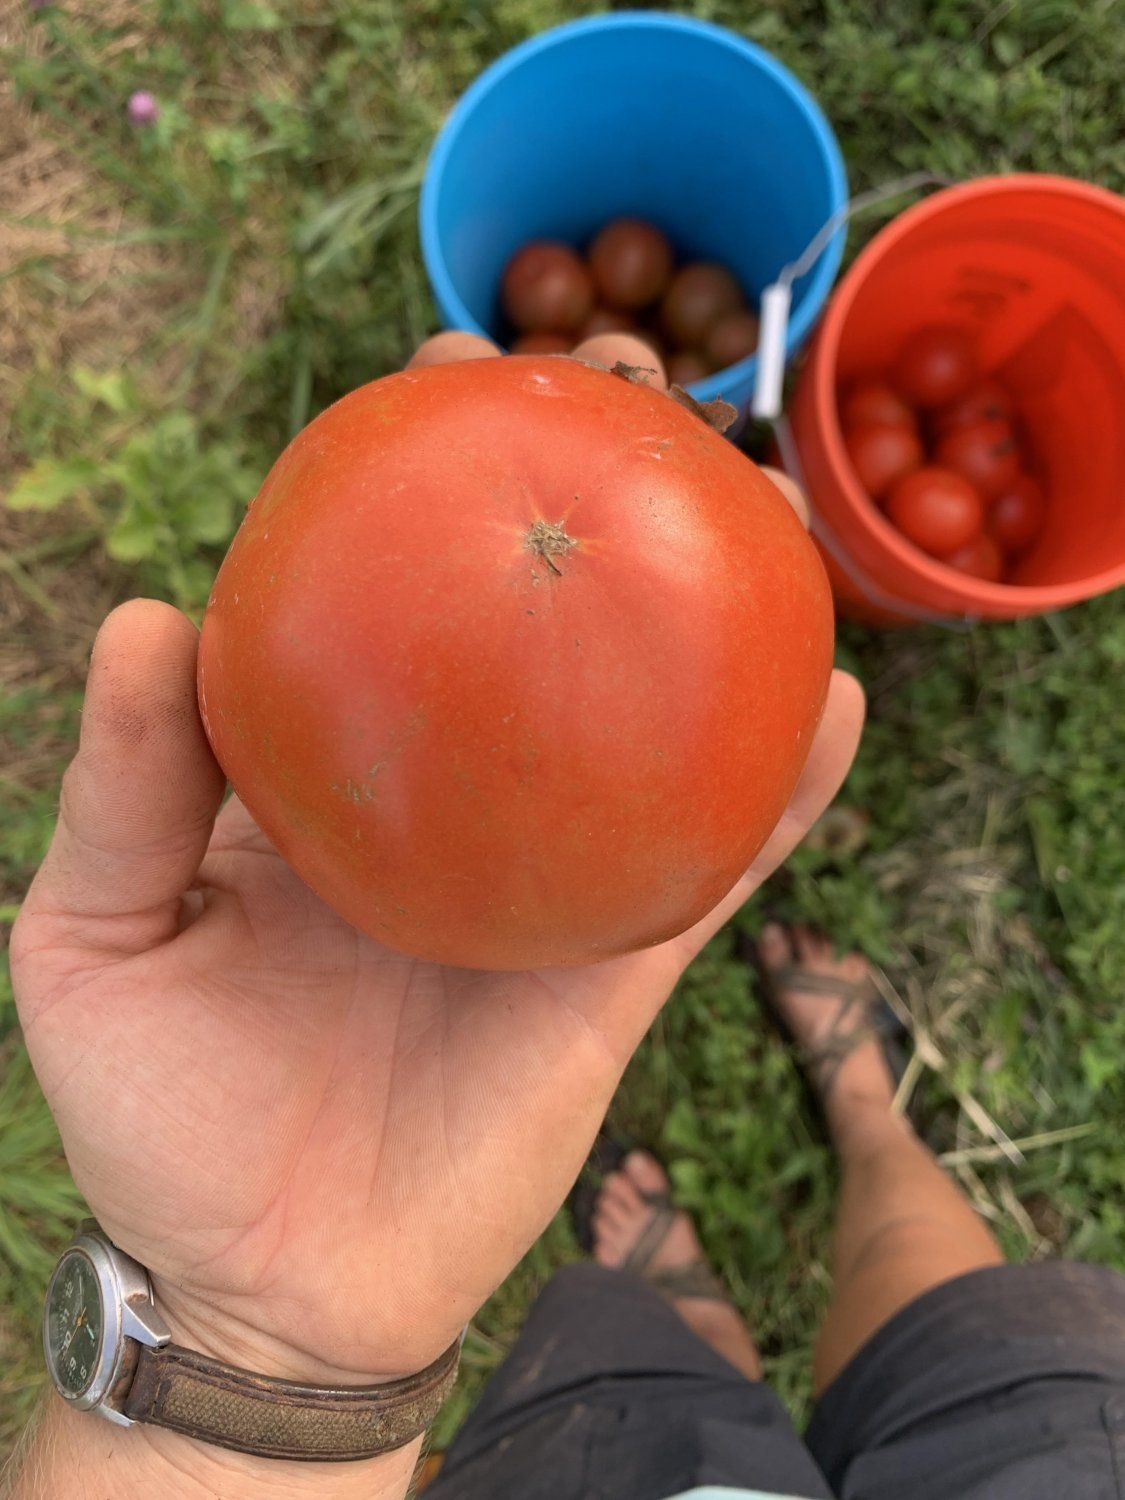 The Perfect Tomato